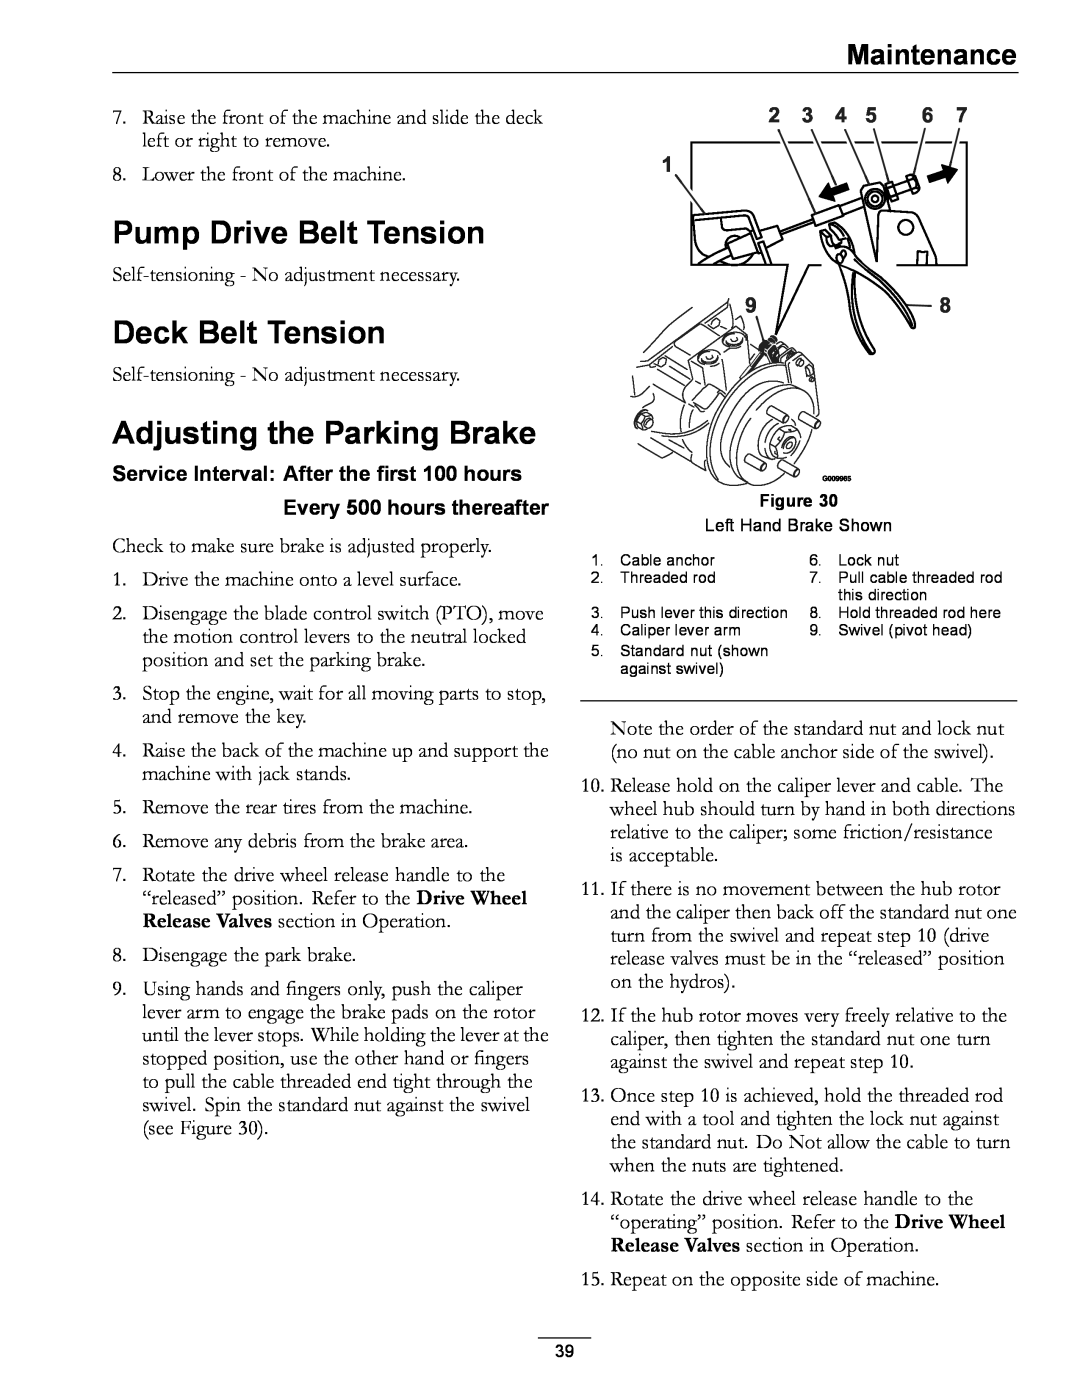 Exmark 000 & higher, 4500-471, S/N 790 Pump Drive Belt Tension, Deck Belt Tension, Adjusting the Parking Brake, Maintenance 